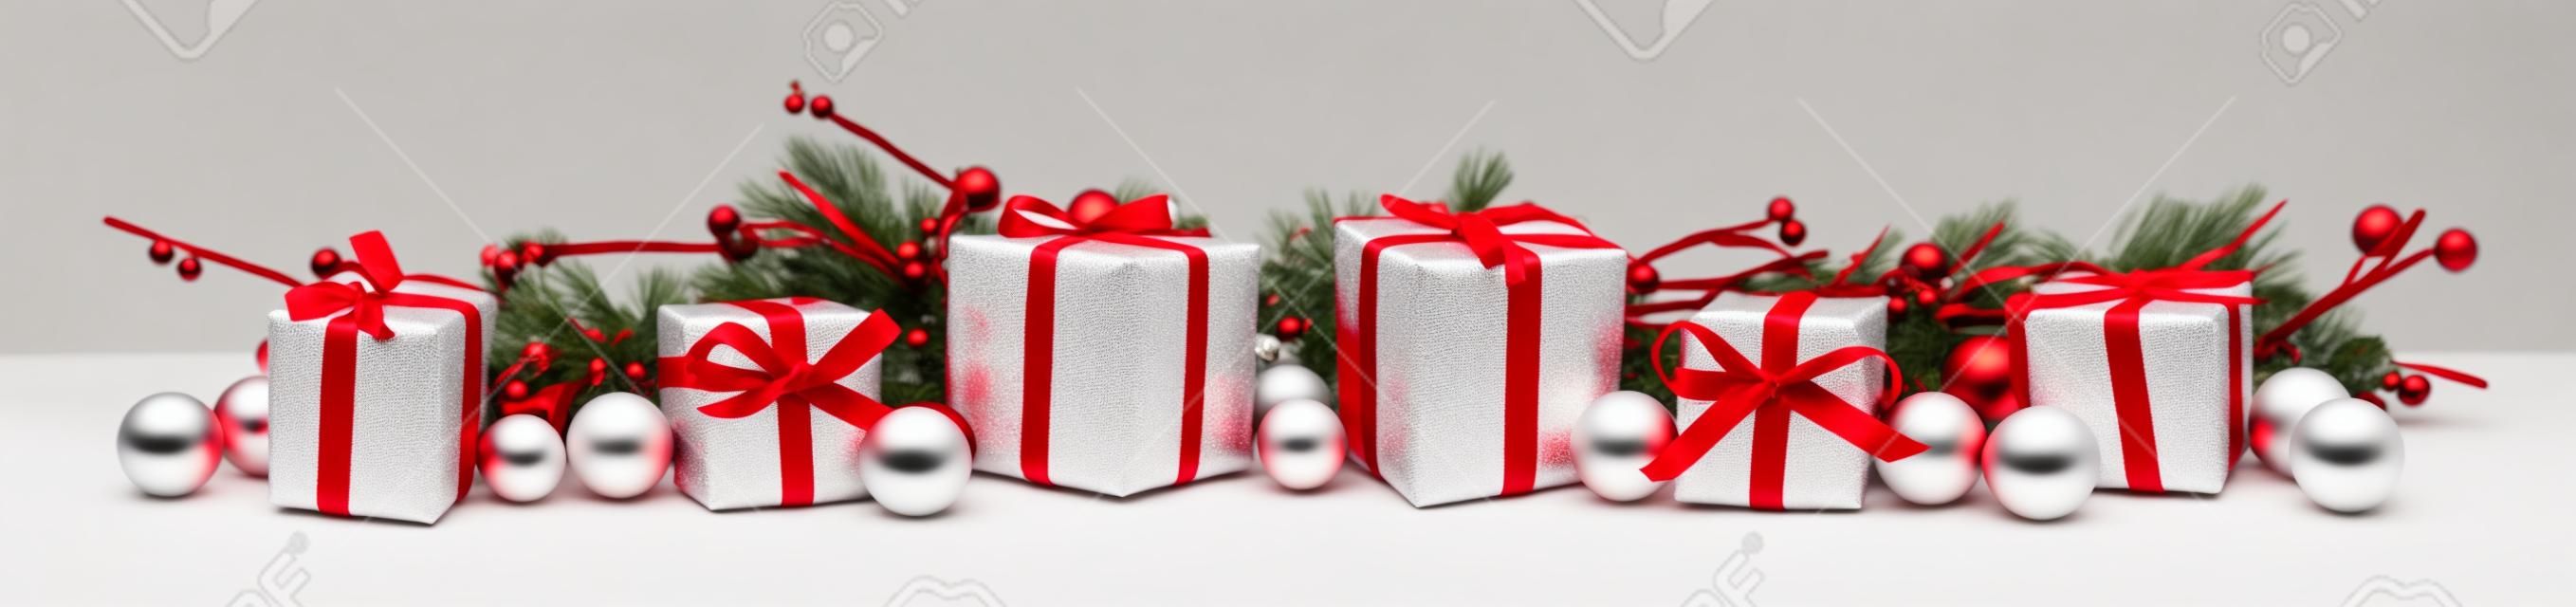 Рождественские граница филиалов и красных и белых подарки на белом фоне